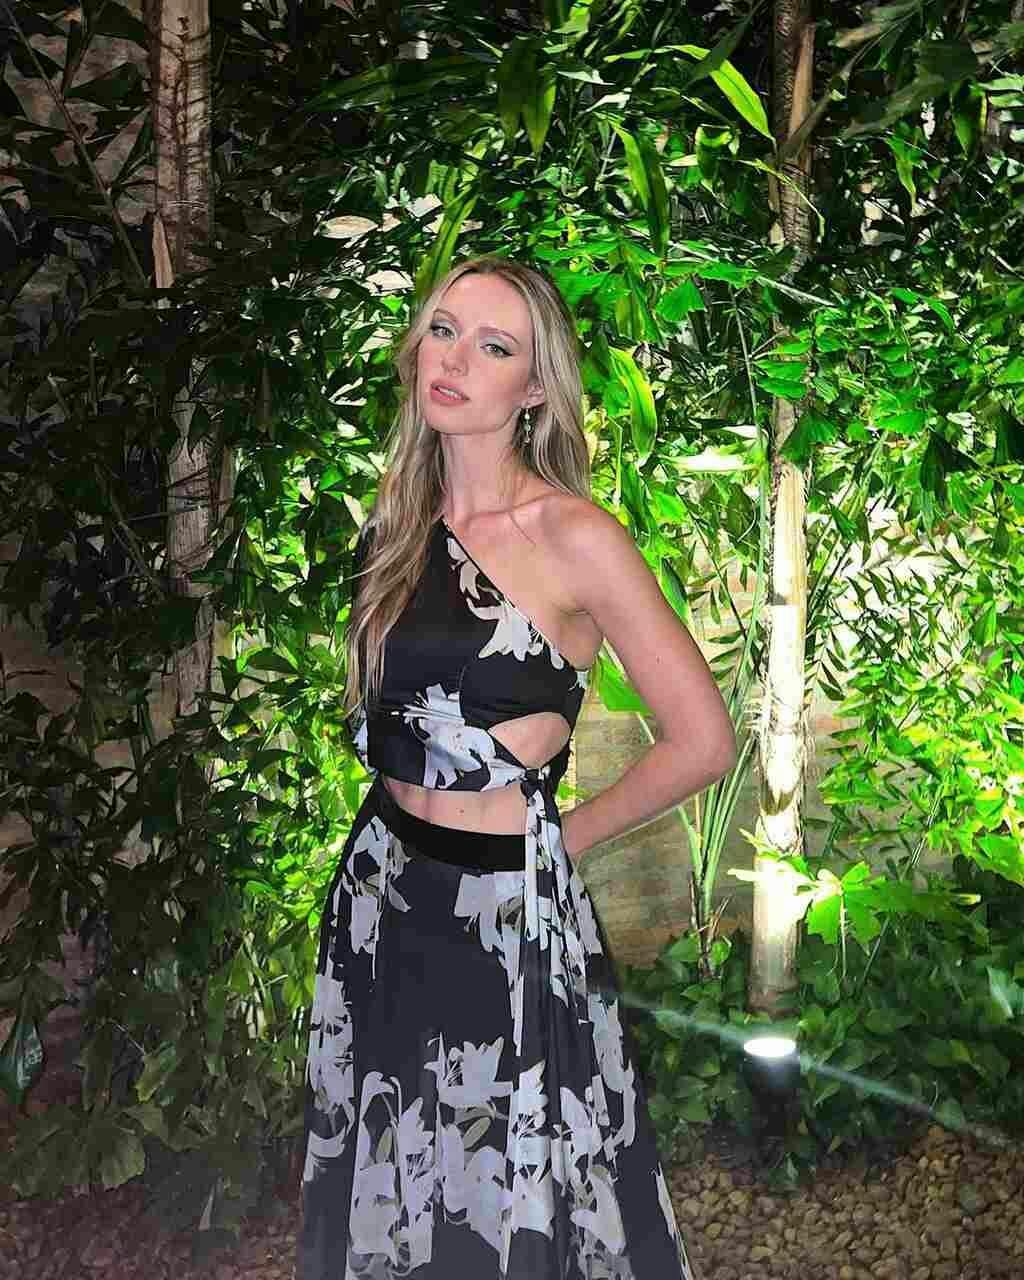 dress evening dress formal wear vegetation jungle rainforest blonde person gown woman